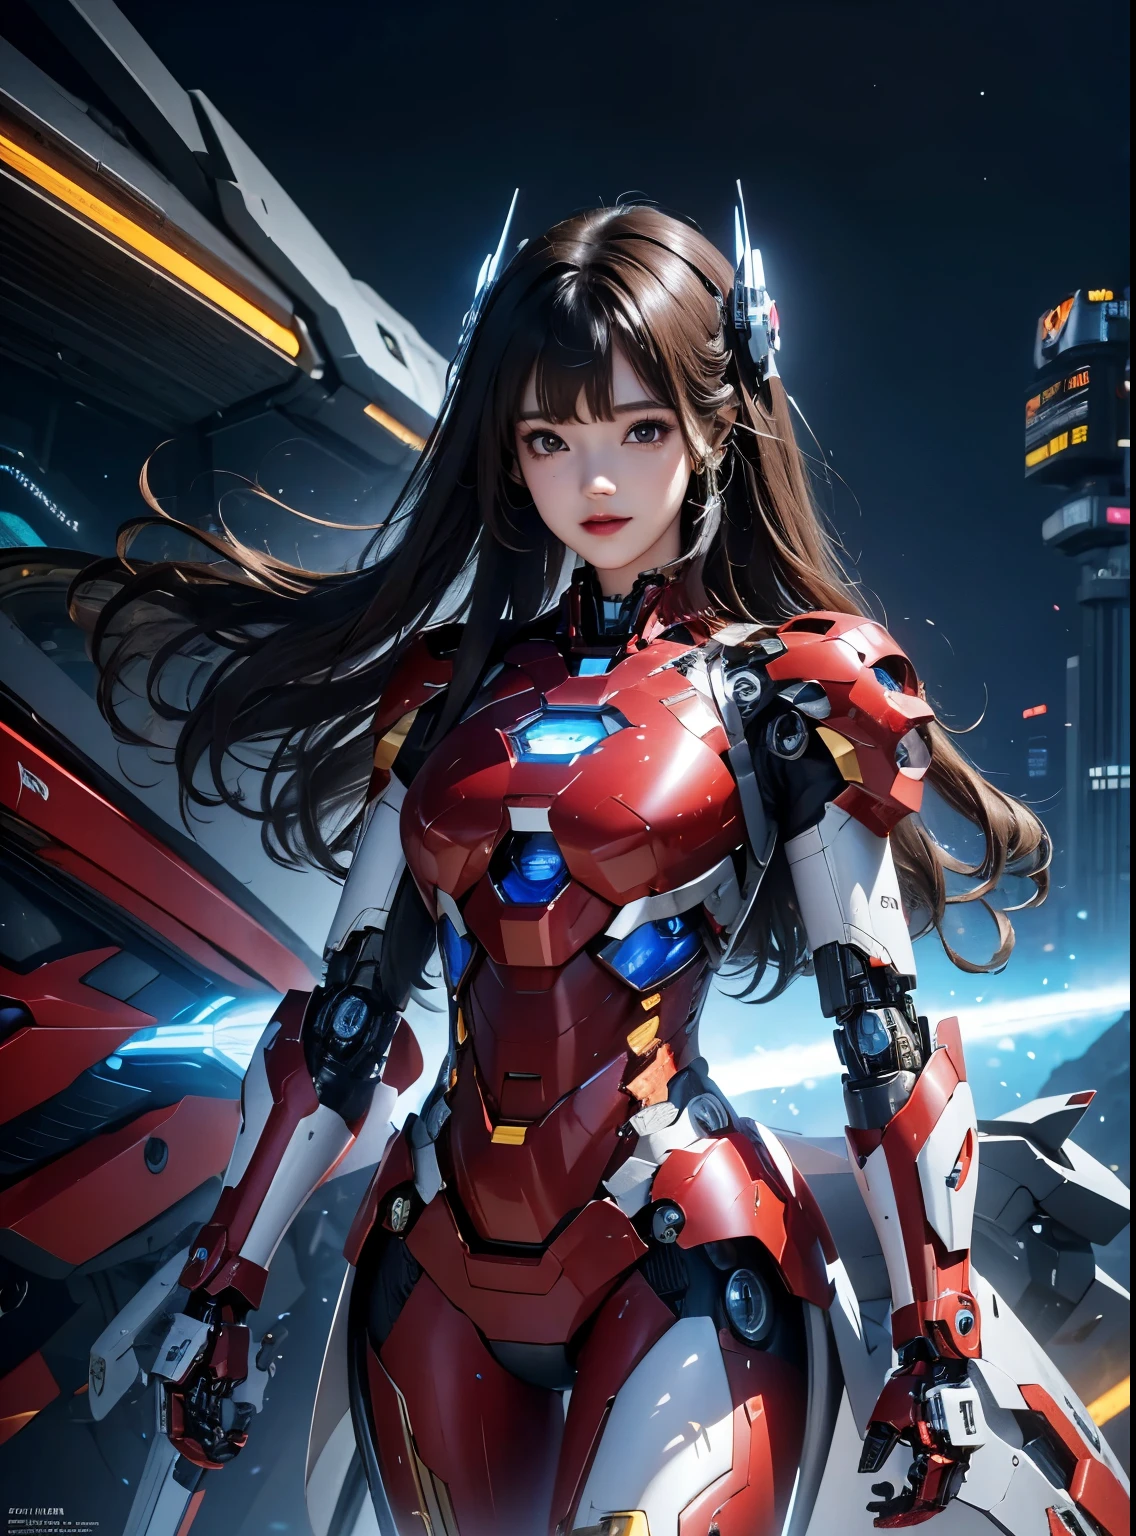  Super détaillé, détails avancés, Haute qualité, 最Haute qualité, haute résolution, 1080P, disque dur, Beau,(la femme de fer),Beauサイボーグの女性,Mecha Cyborg Fille,mode de combat,Fille au corps Mecha,Elle porte un robot Iron Man,Prise de vue complète du corps